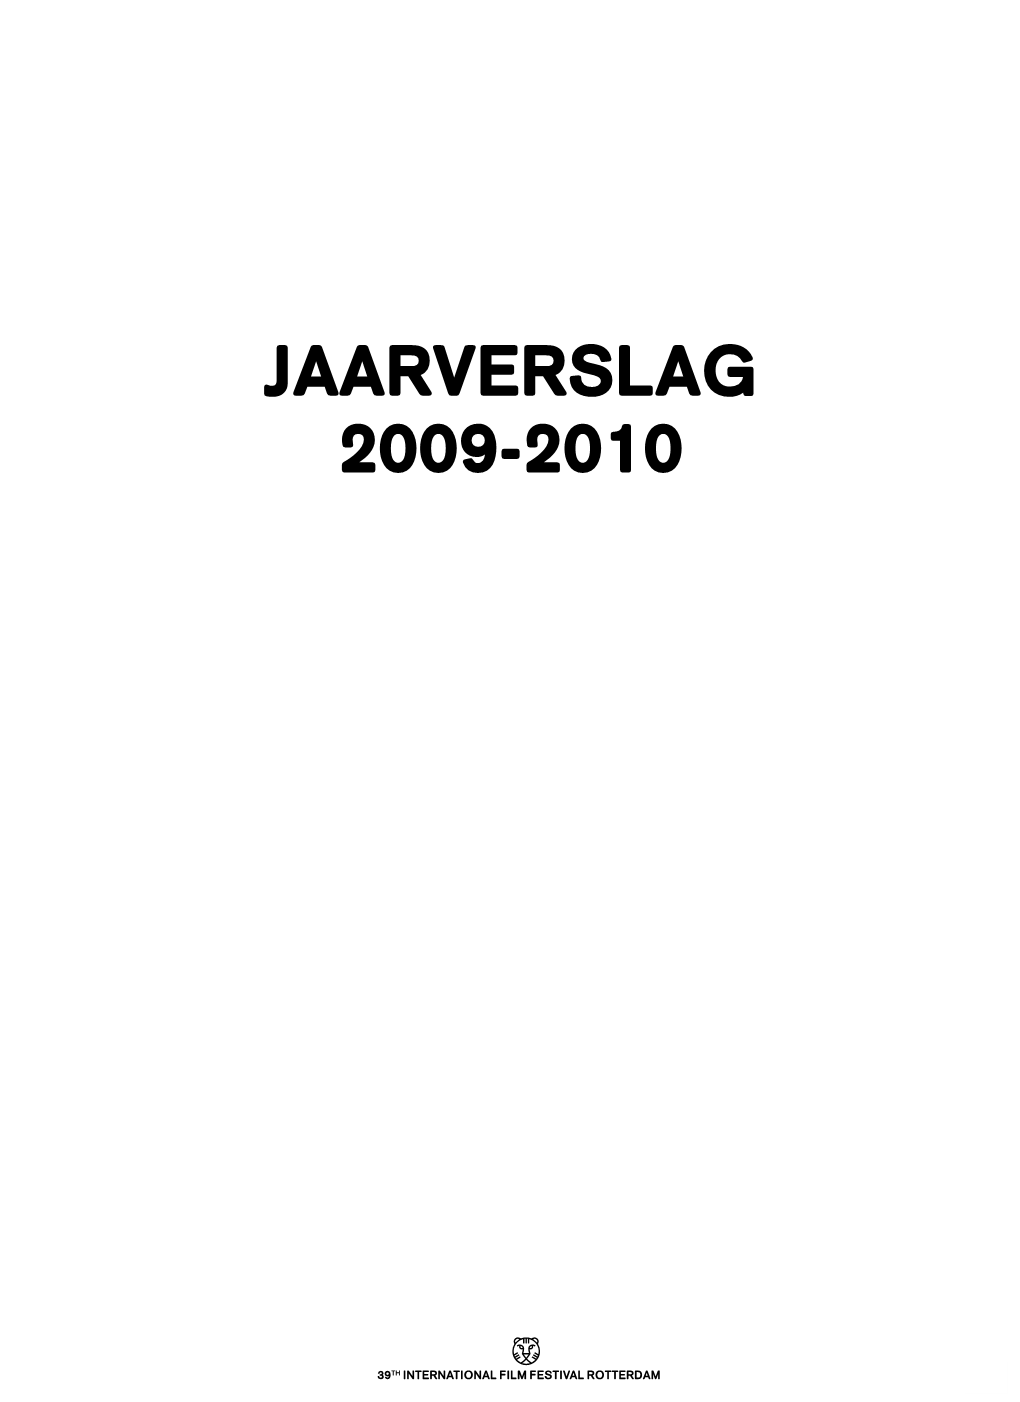 Jaarverslag 2009-2010